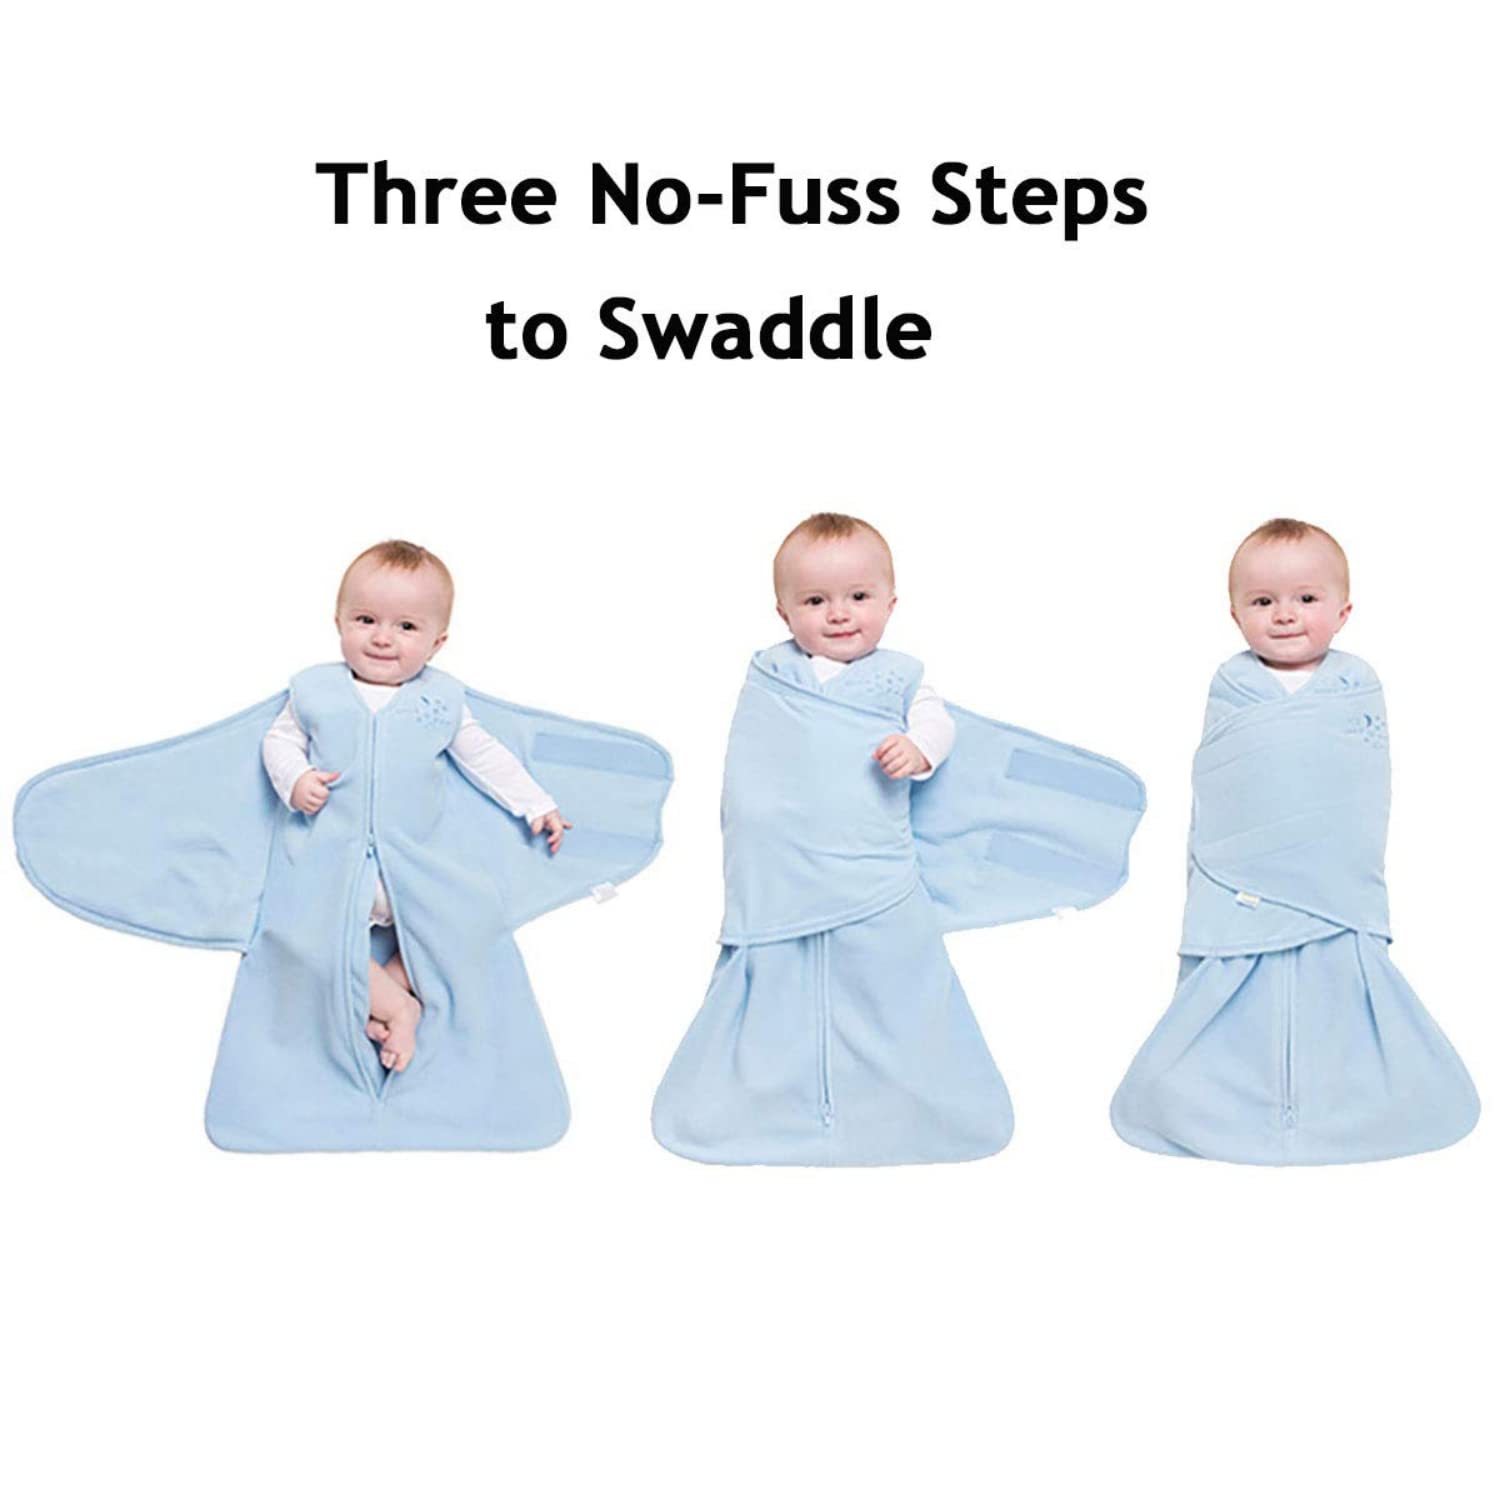 HALO Micro-Fleece Sleepsack Swaddle, 3-Way Adjustable Wearable Blanket, TOG 3.0, Baby Blue, Preemie